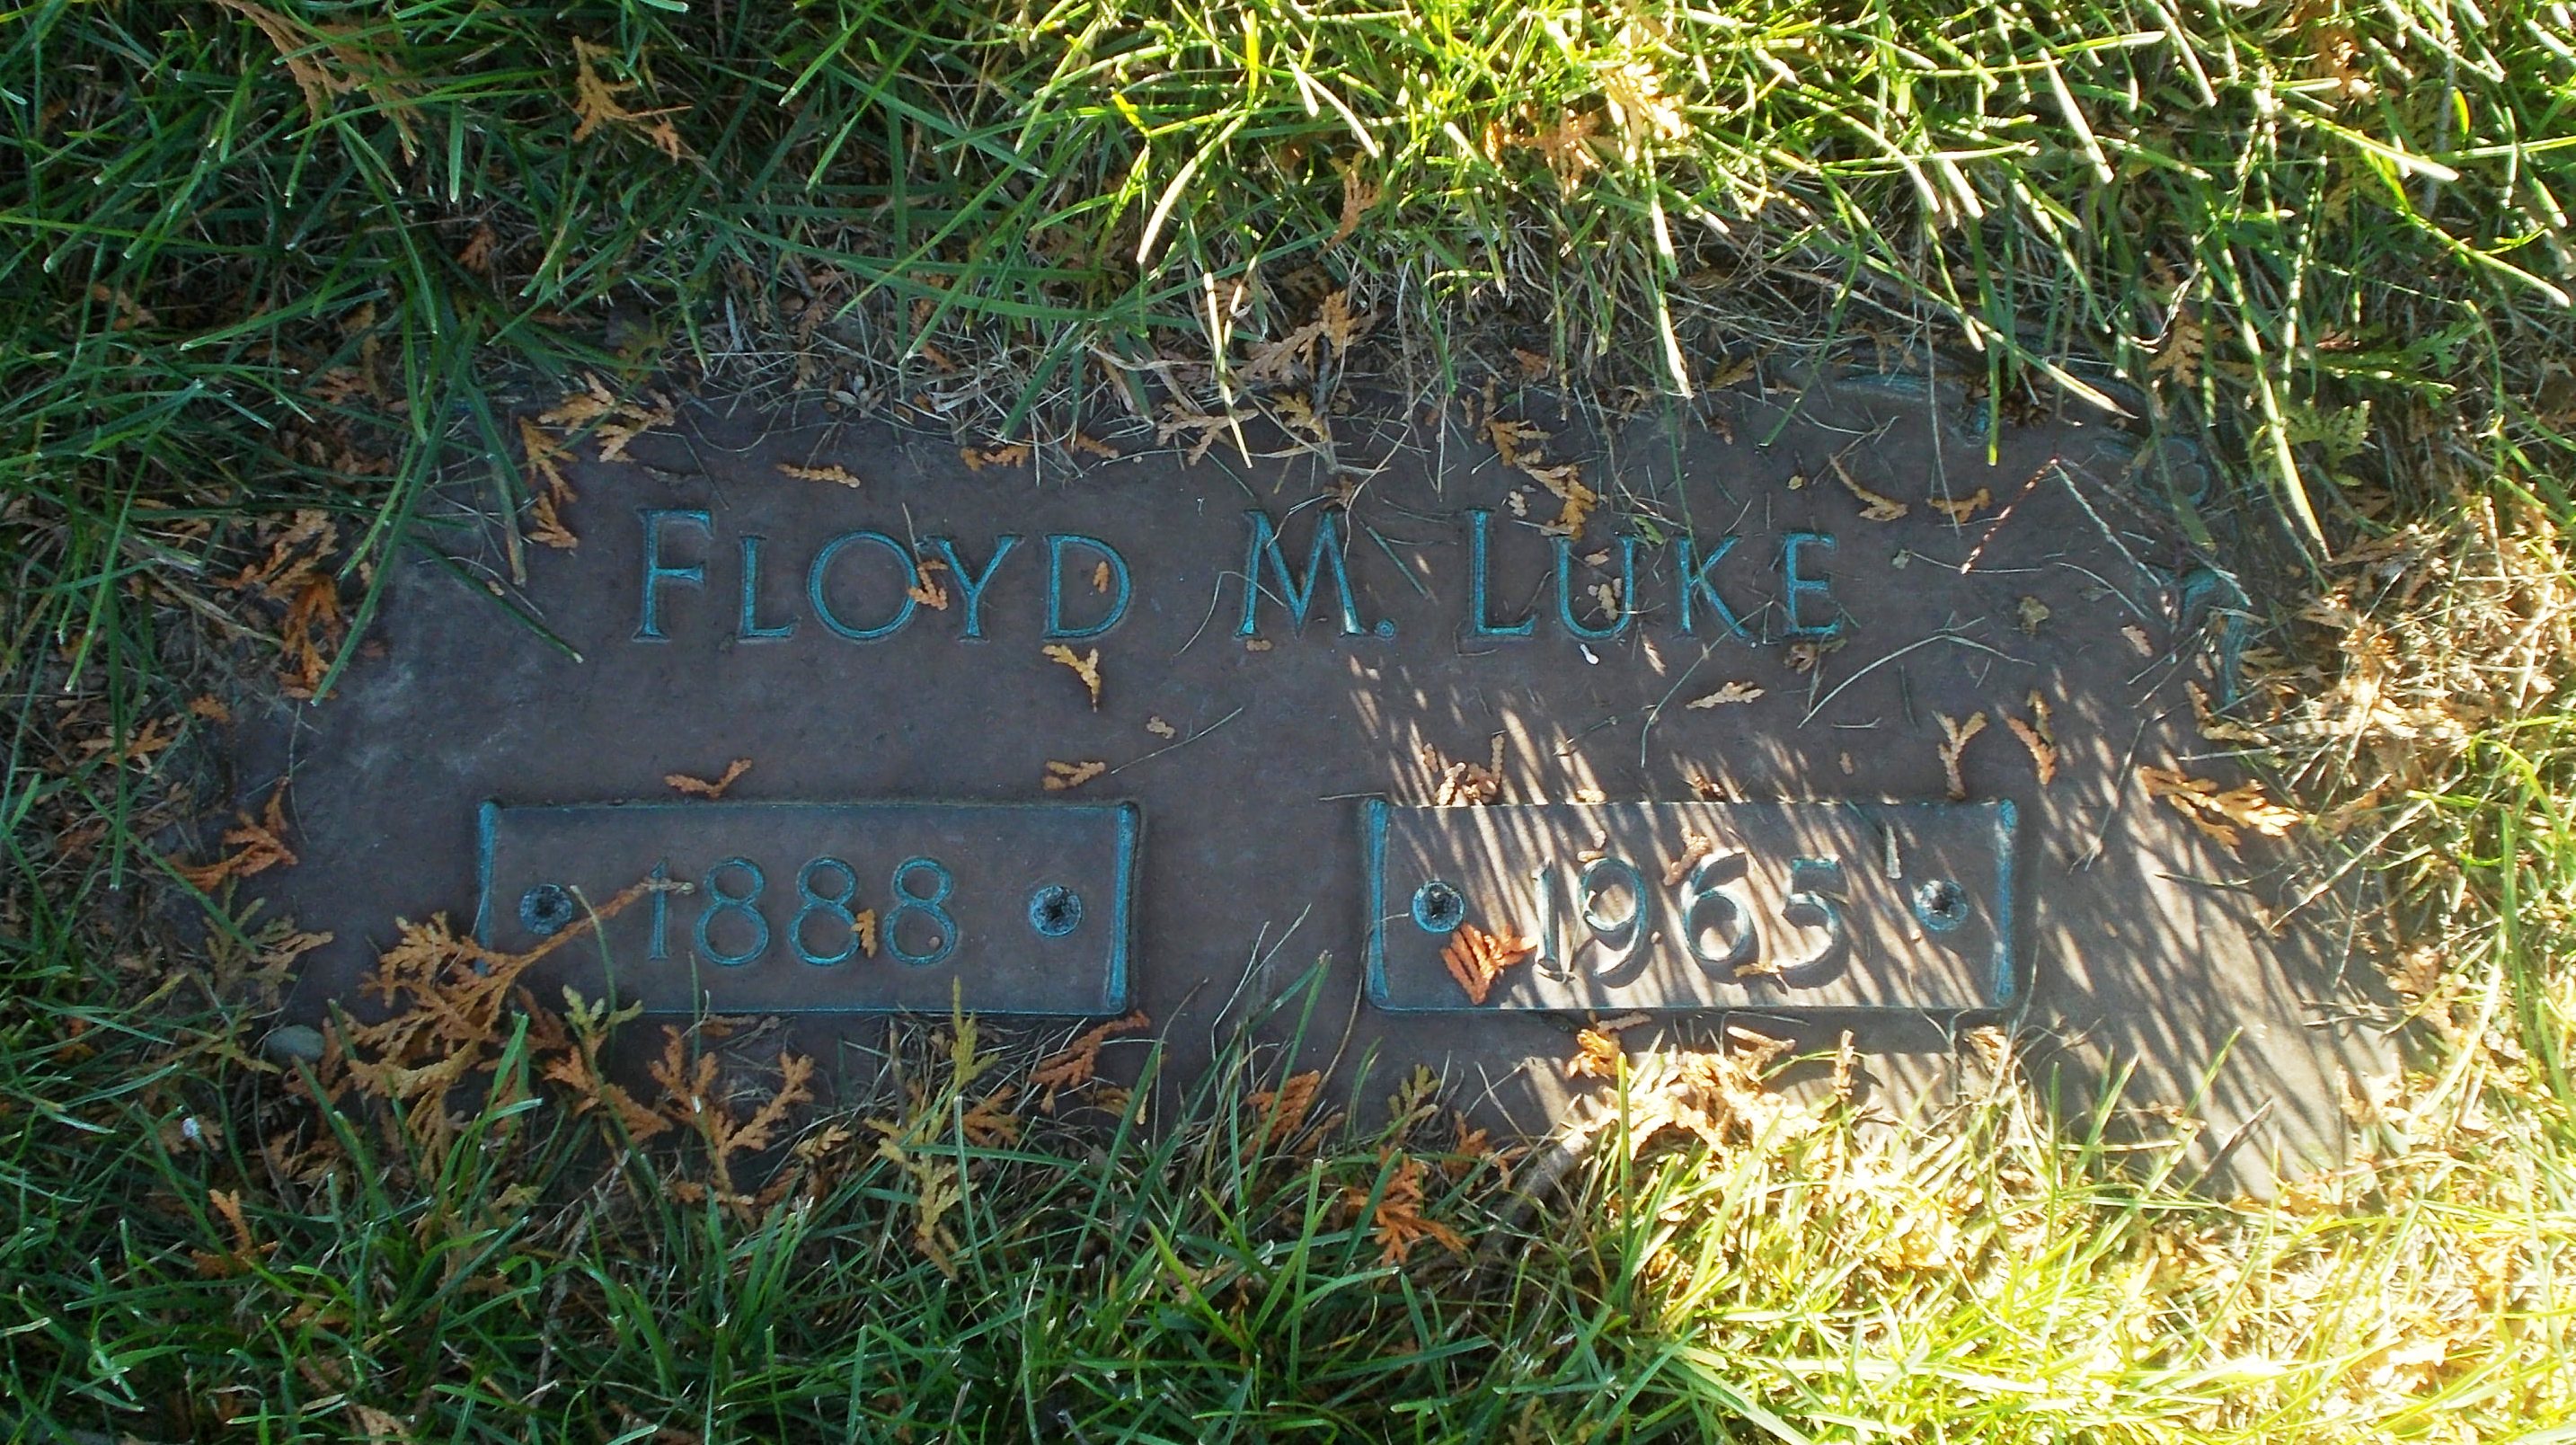 Floyd Mell Luke